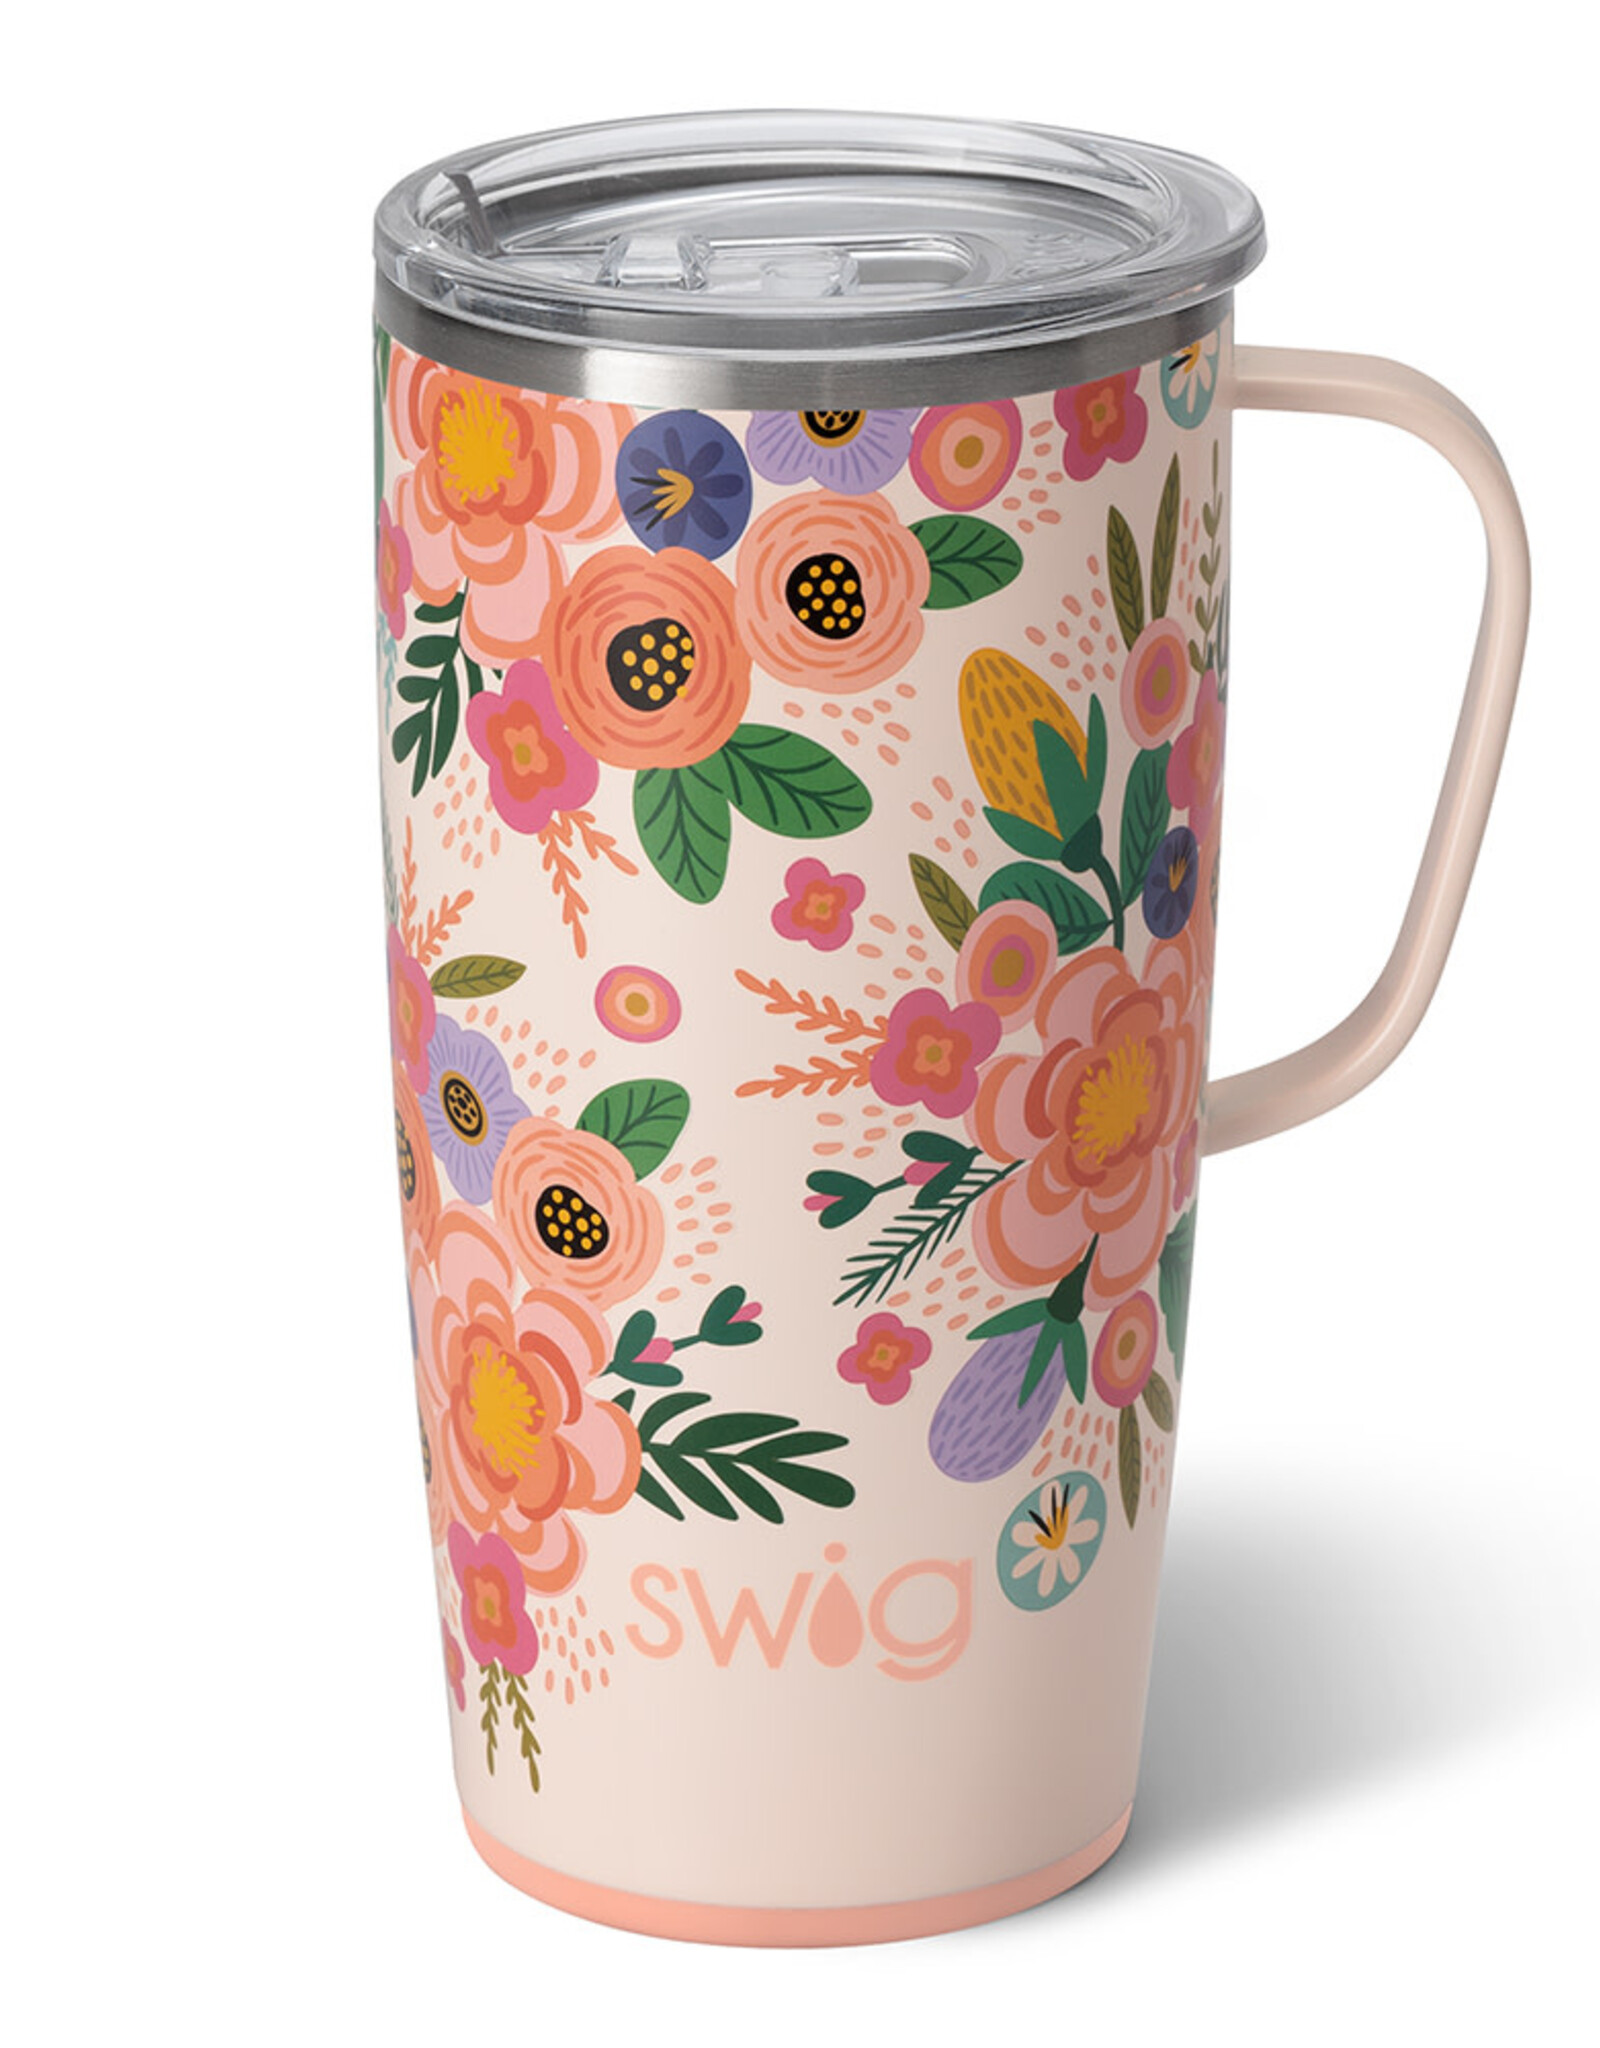 Swig 40 oz. Print Mega Mug – Simply Charleston Boutique